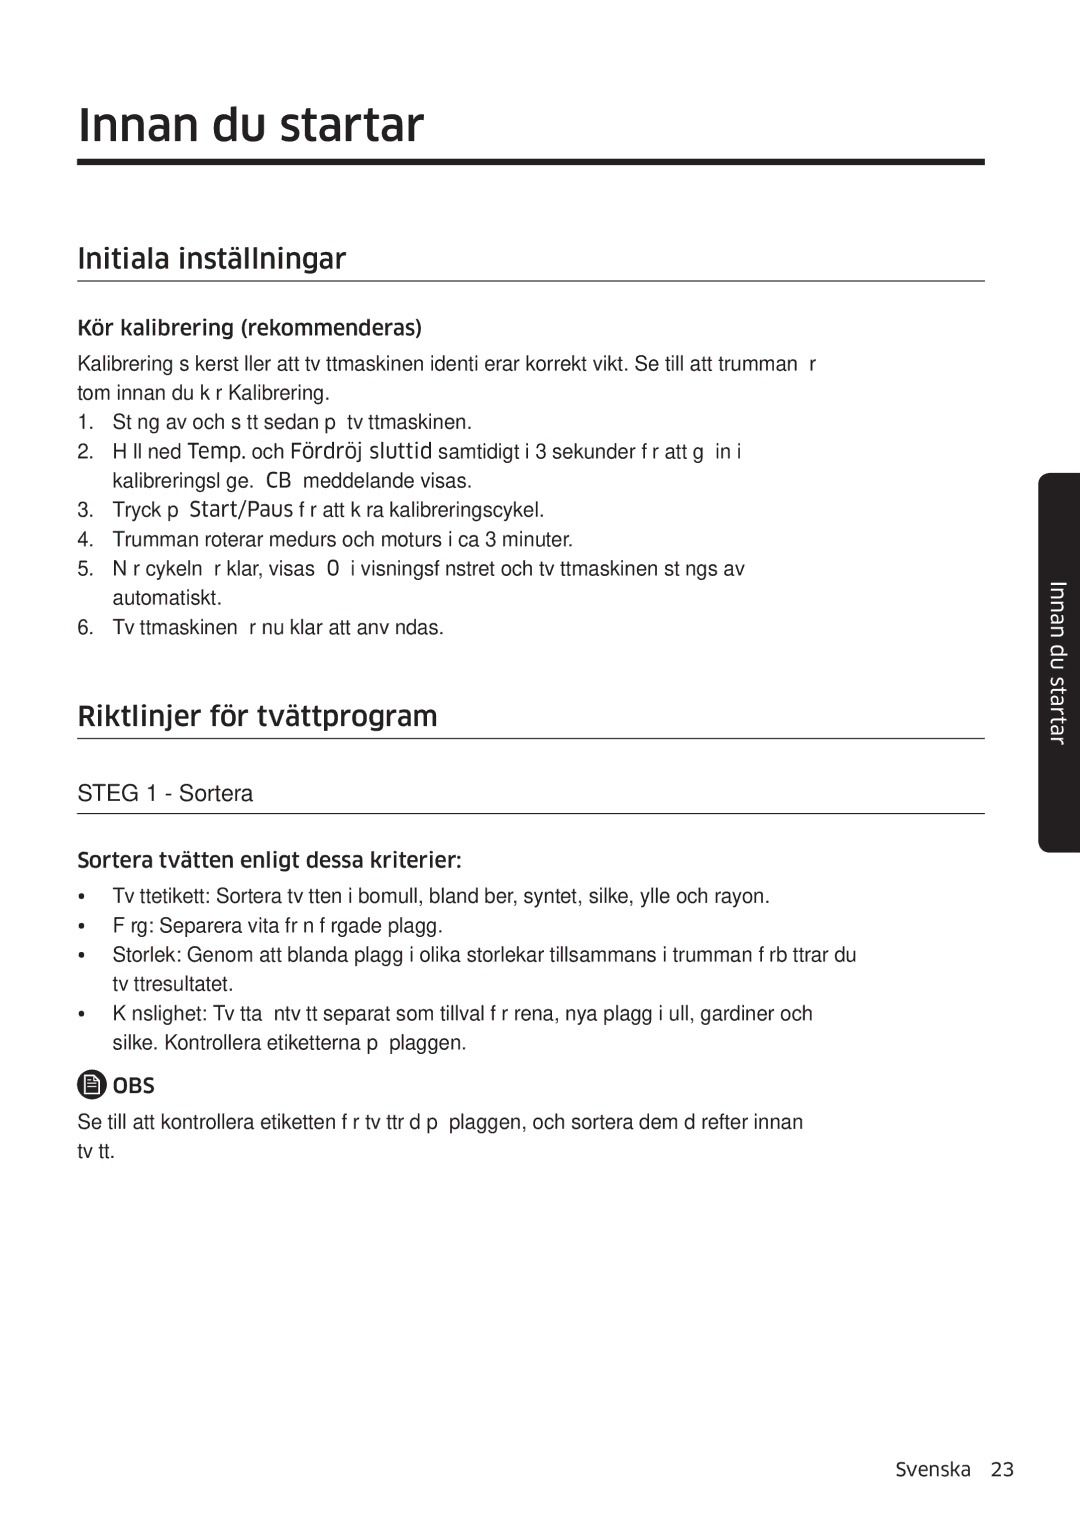 Samsung WW80K6604QW/EE manual Innan du startar, Lnitiala inställningar, Riktlinjer för tvättprogram, Steg 1 Sortera 